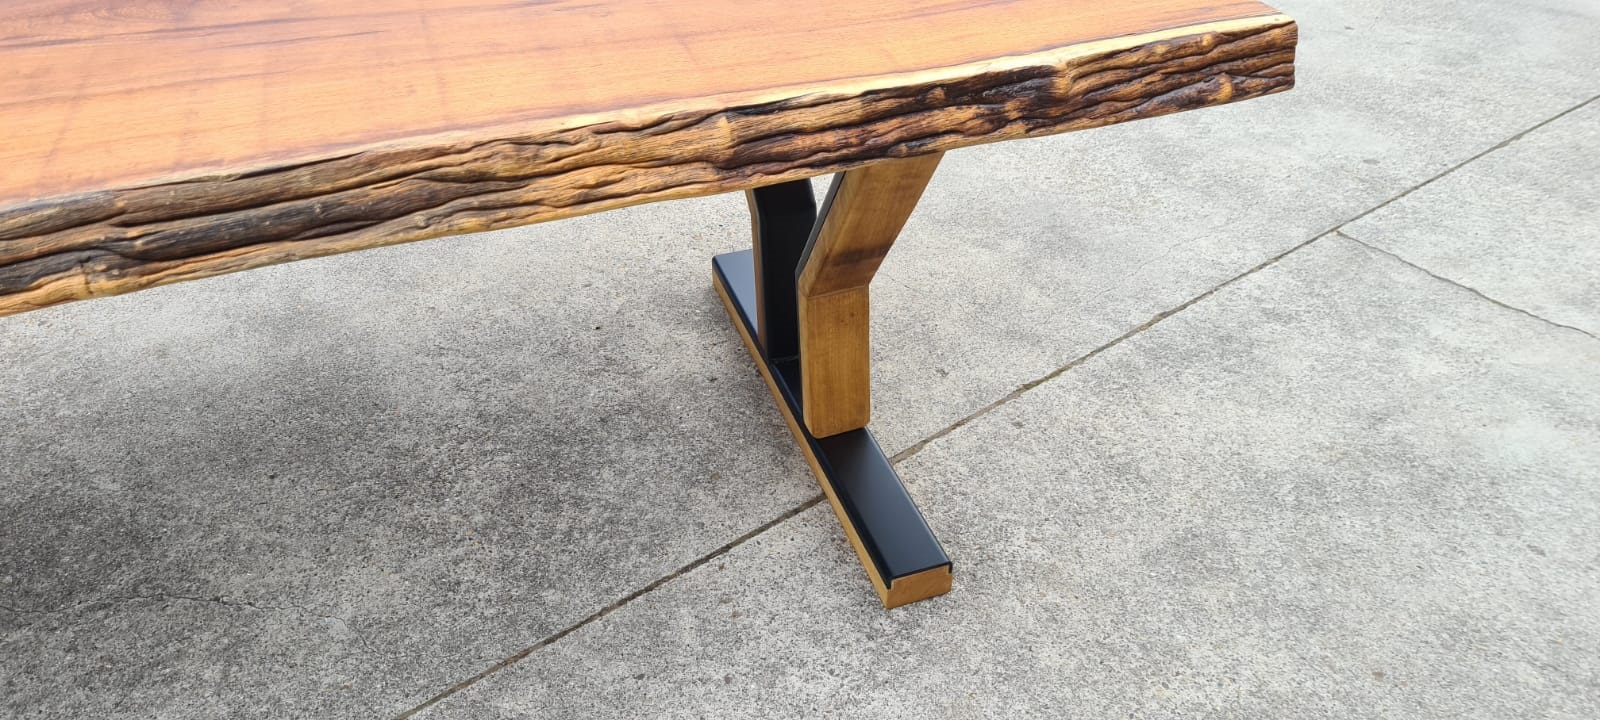 Boomstamtafel van iroko met een designonderstel van hout en staal